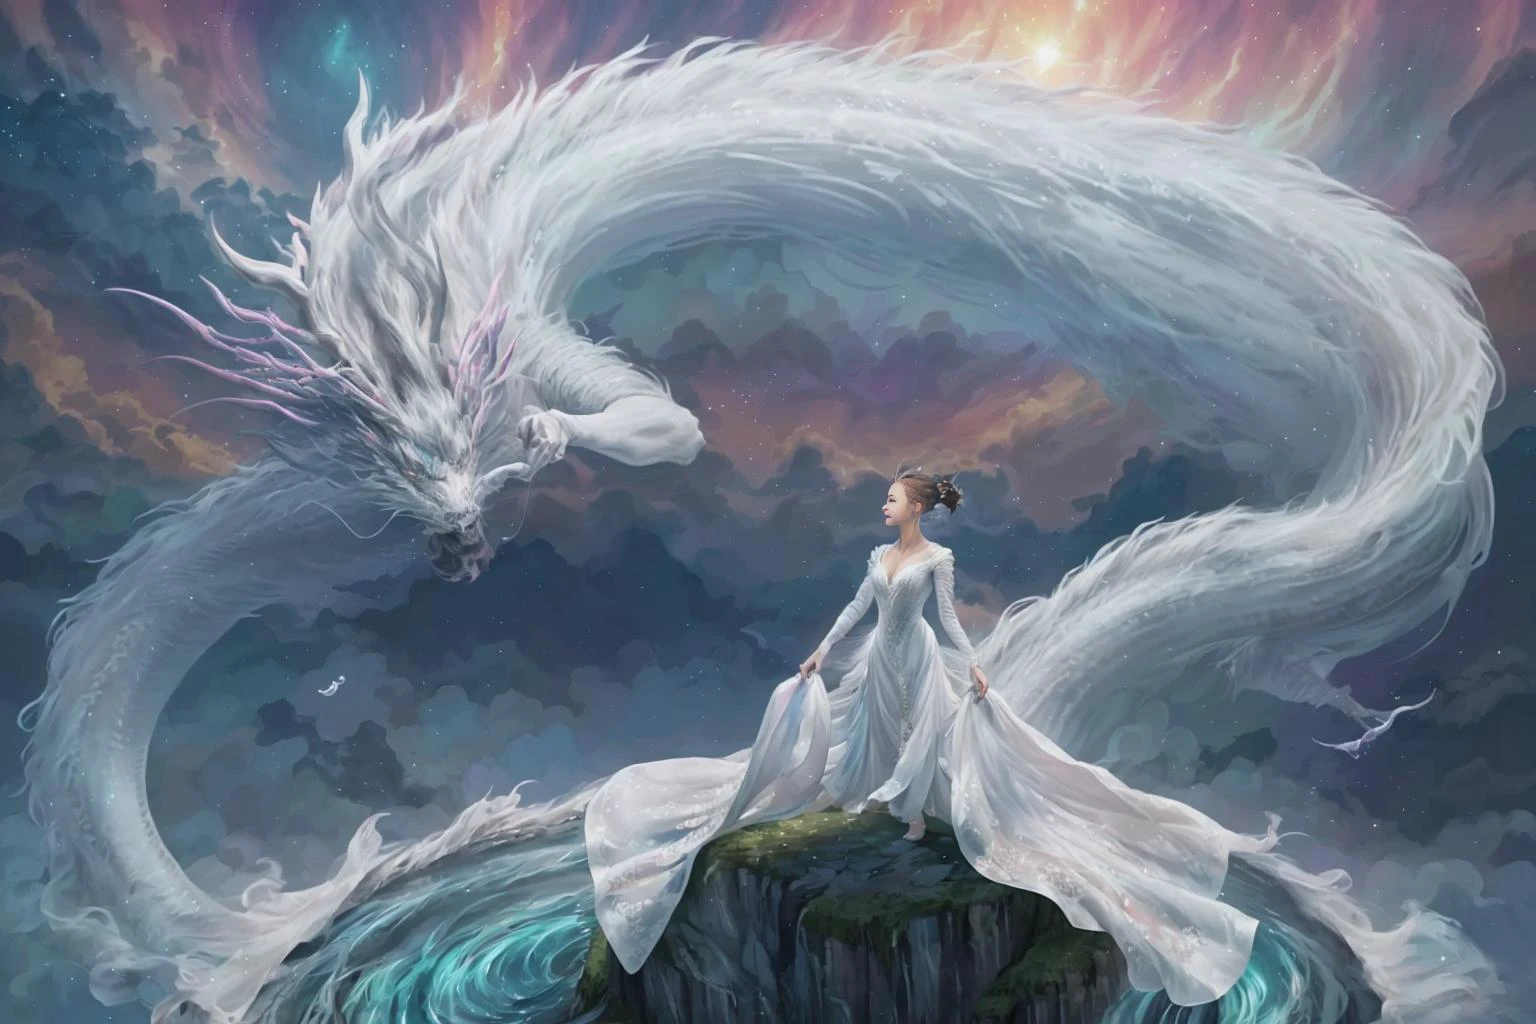 在迷人的畫面中, 一位身穿白色中國長袍的優雅女子騎著中國神話中的龍在天空中滑翔. 當他們穿越天空時, 她飄逸的長袍和龍的虹彩鱗片營造出和諧與超凡脫俗之美的迷人景象. 
高動態範圍, (照片寫實主義, 杰作品质, 最好的品質), , 純粹的Erosface_v1,ulzzang-6500-v1.1,